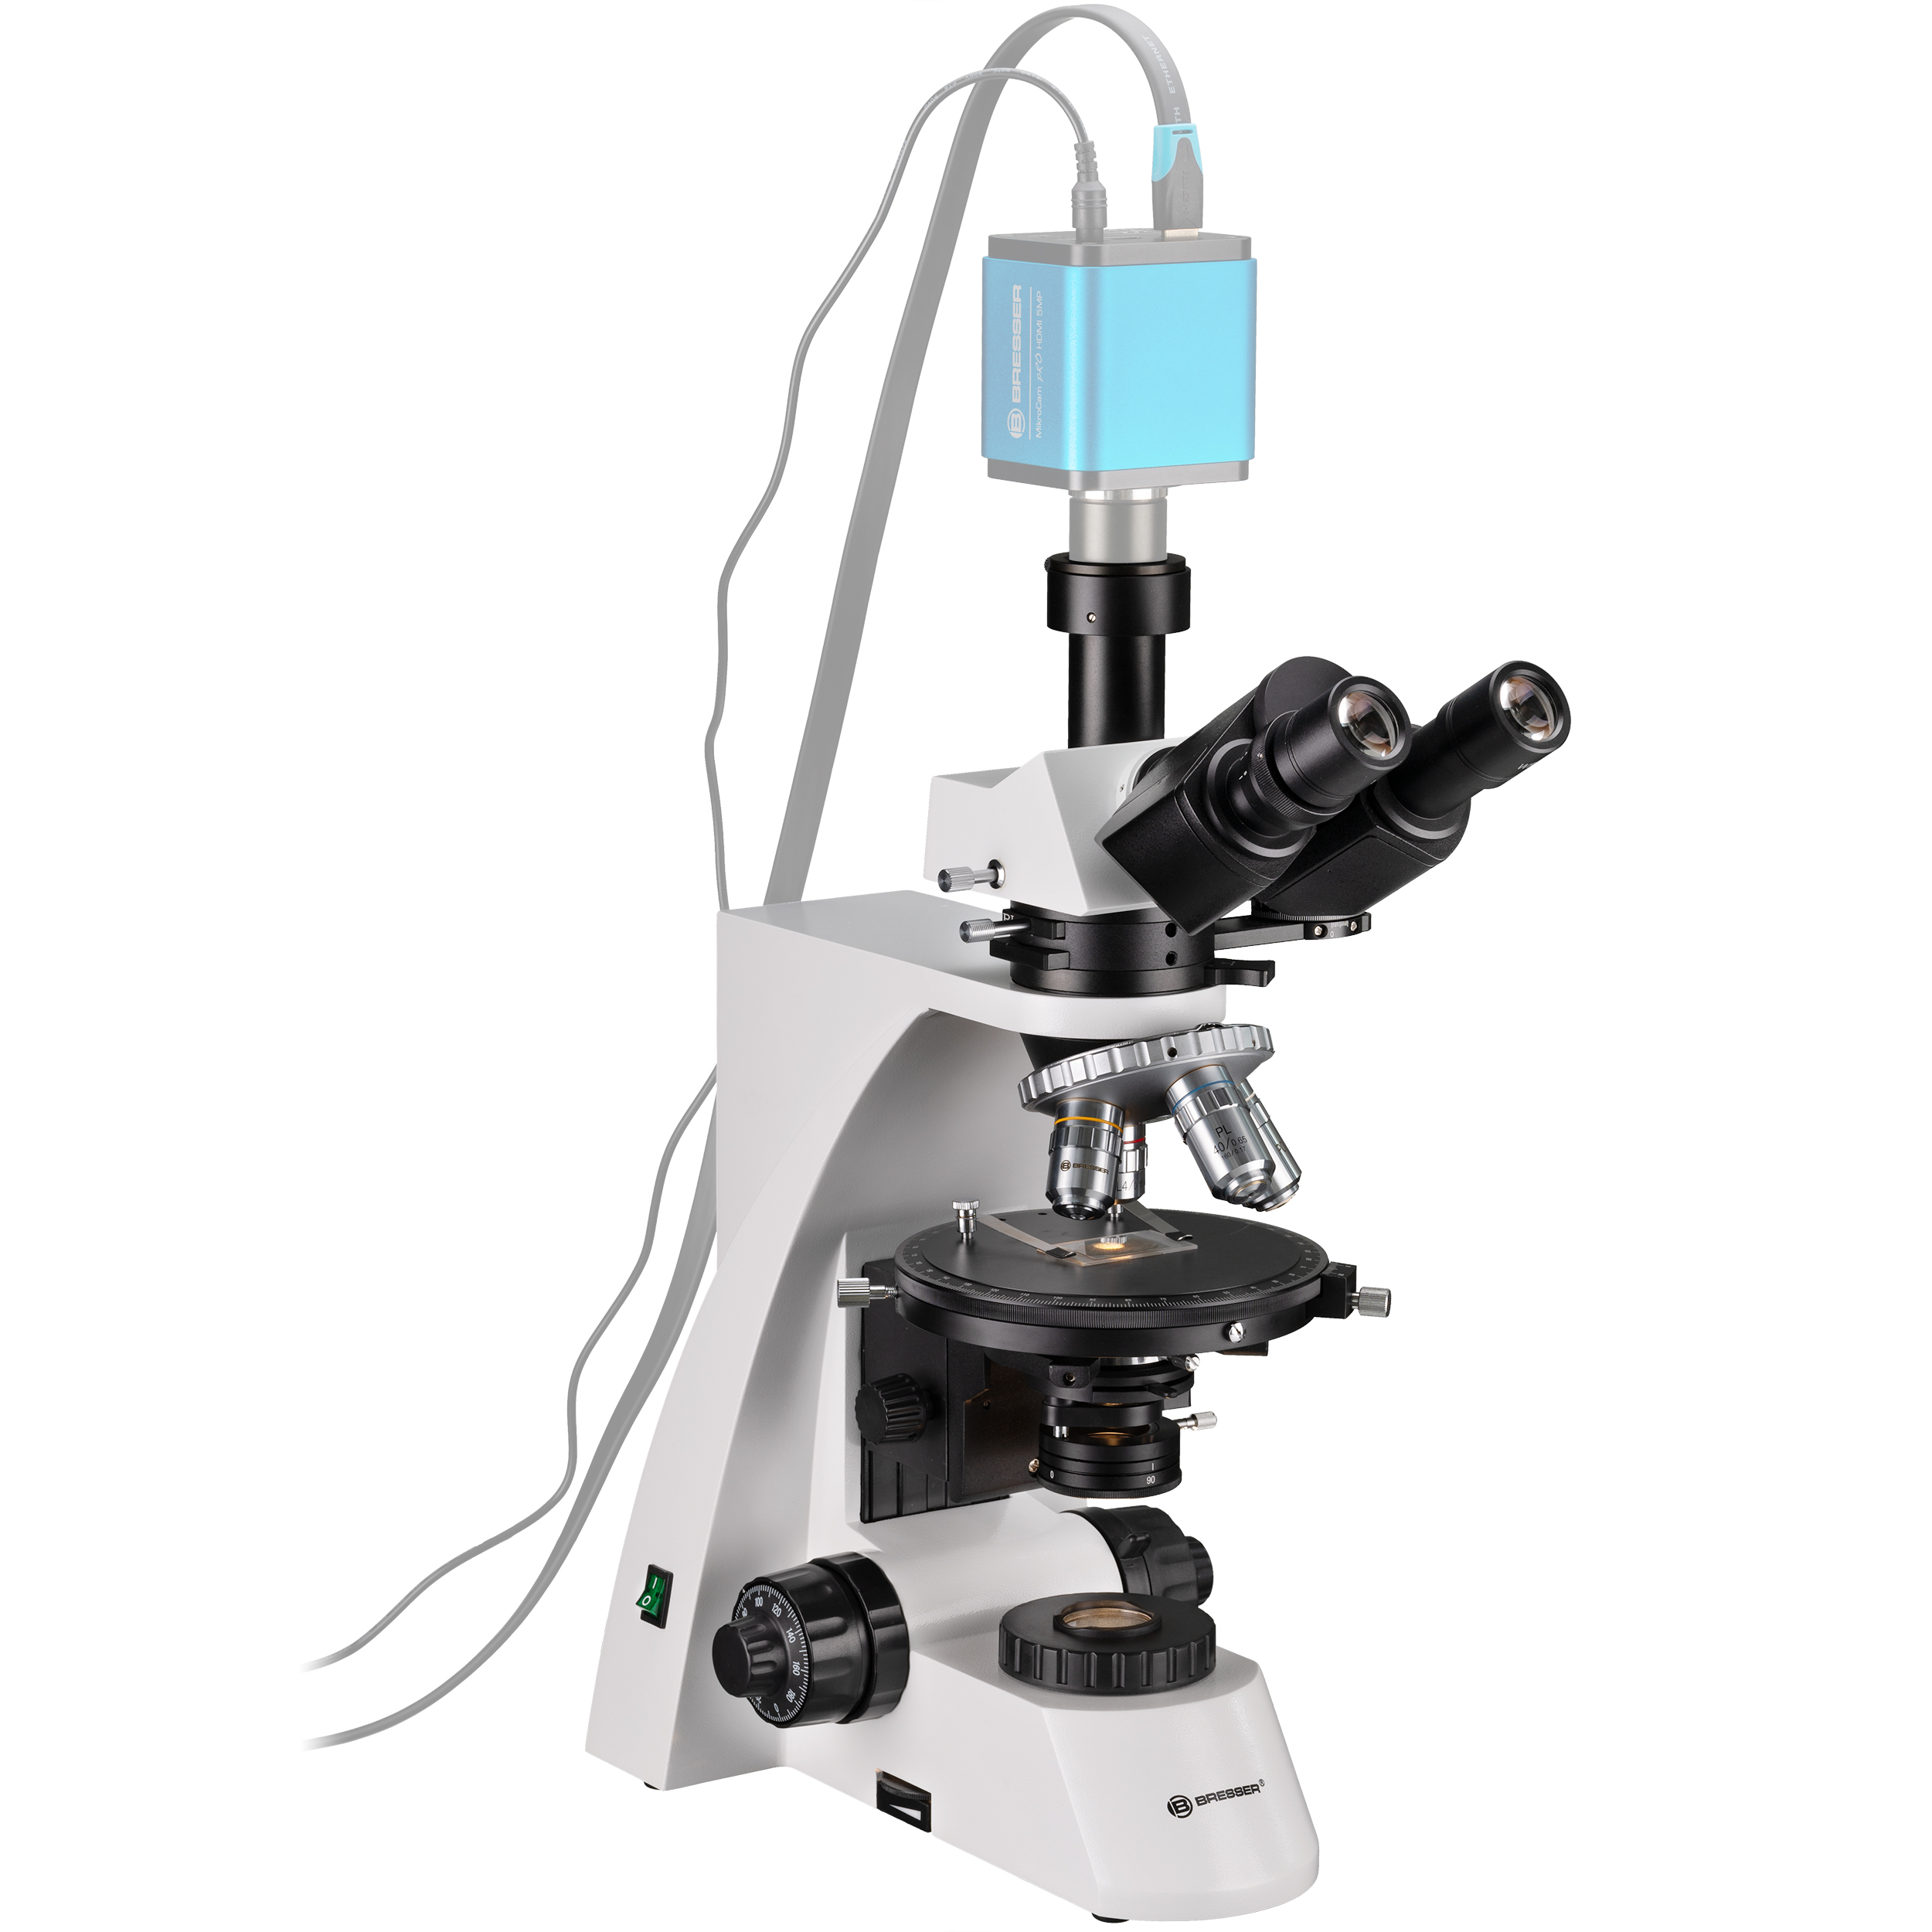 BRESSER Science MPO 401 Microscopio